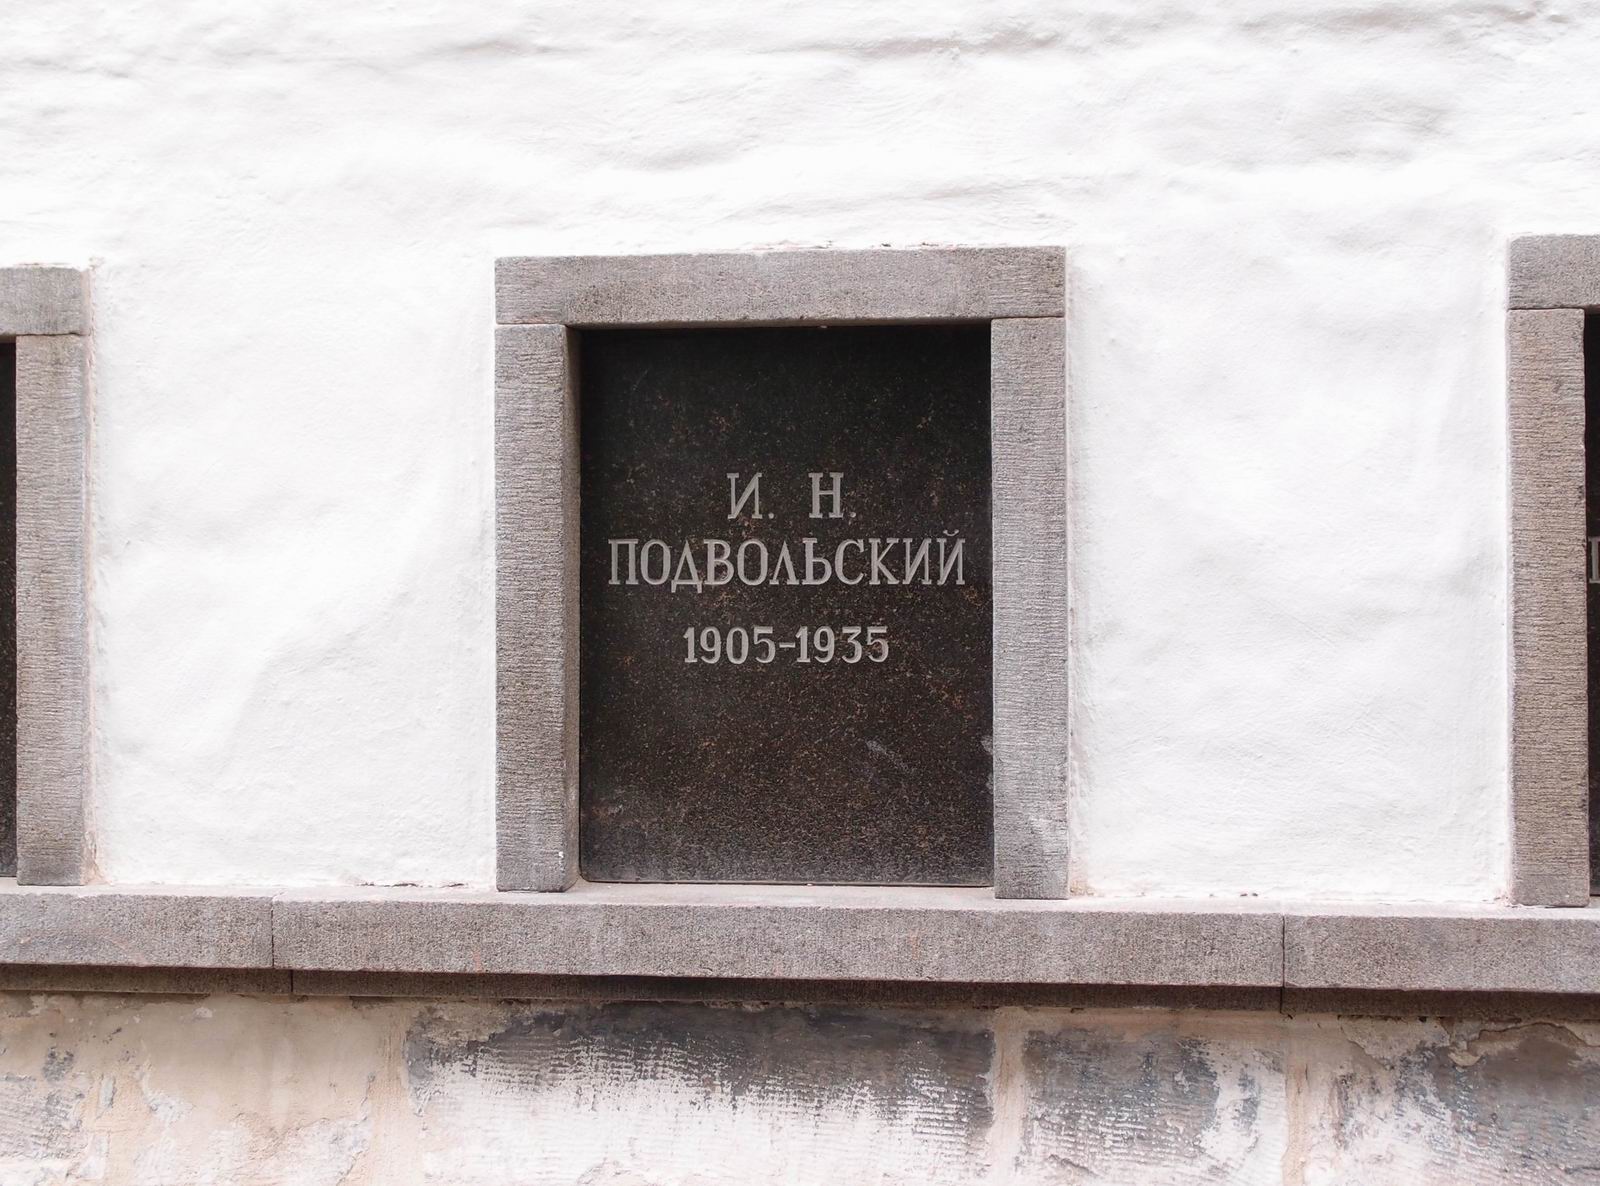 Плита на нише Подвольского И.Н. (1905–1935), на Новодевичьем кладбище (колумбарий [3]–33). Нажмите левую кнопку мыши, чтобы увидеть общий вид секции.